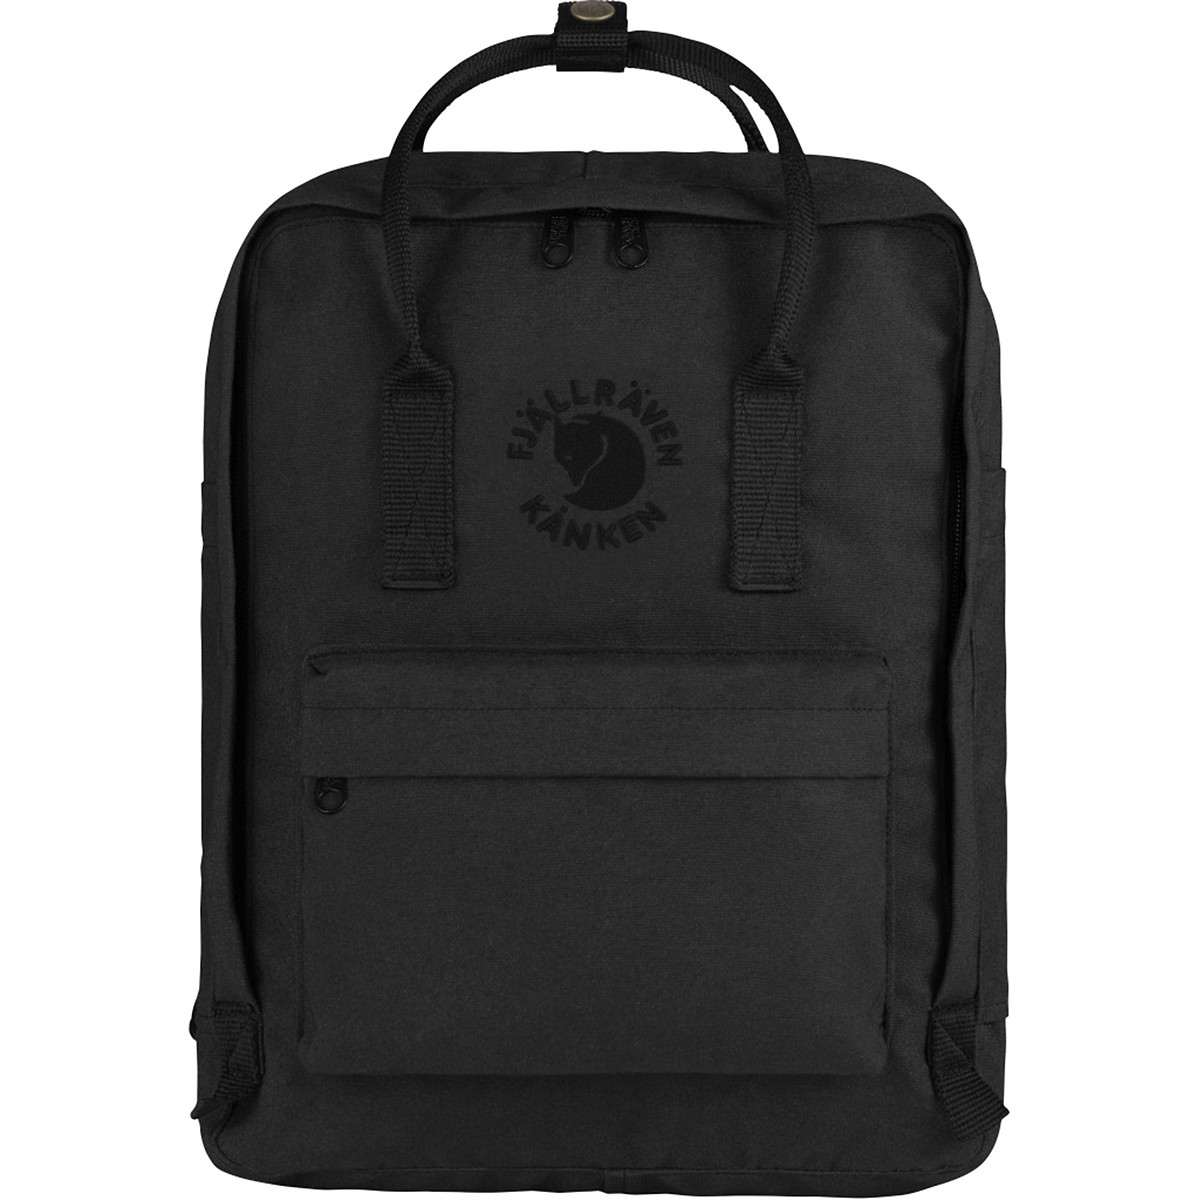 Kanken 16L Backpack